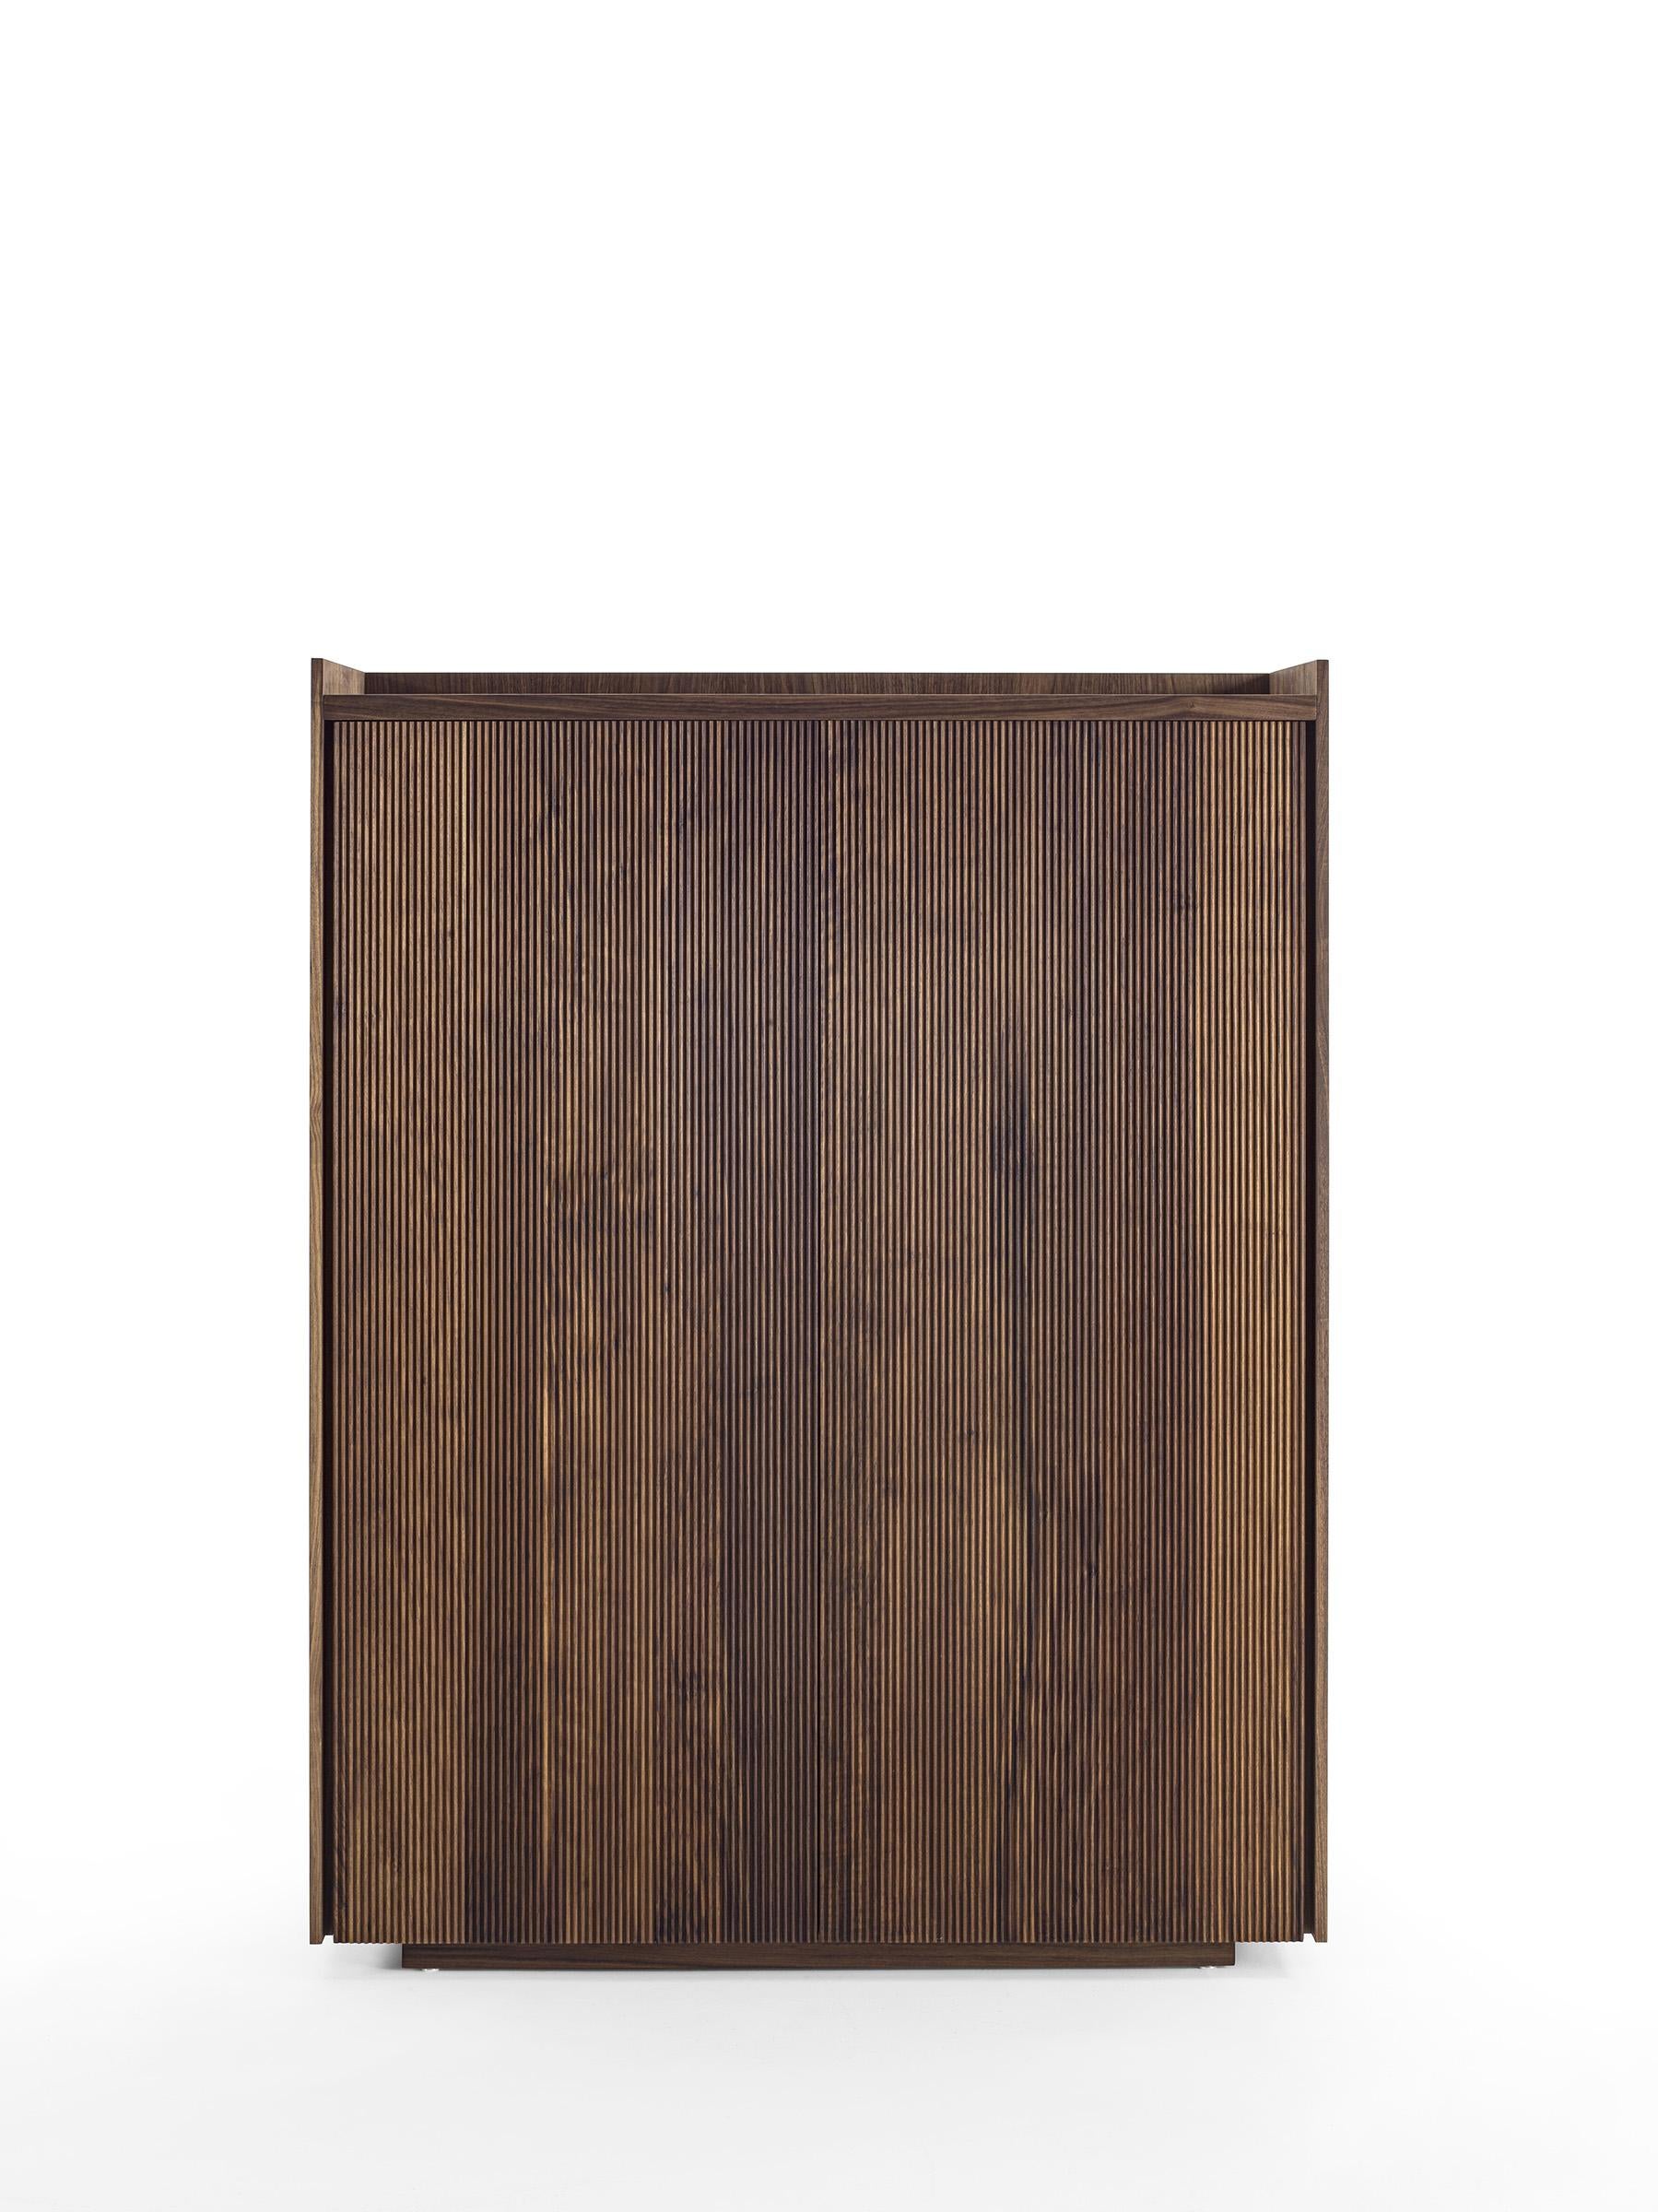 Highboard aus Massivholz und Tischlerplatte, gekennzeichnet durch einen Rahmen, der die Platte, die Innenböden und die Schubladen enthält, die mit traditionellen Schwalbenschwanzverbindungen und einem gerillten Griff gefertigt sind. Ausgestattet mit